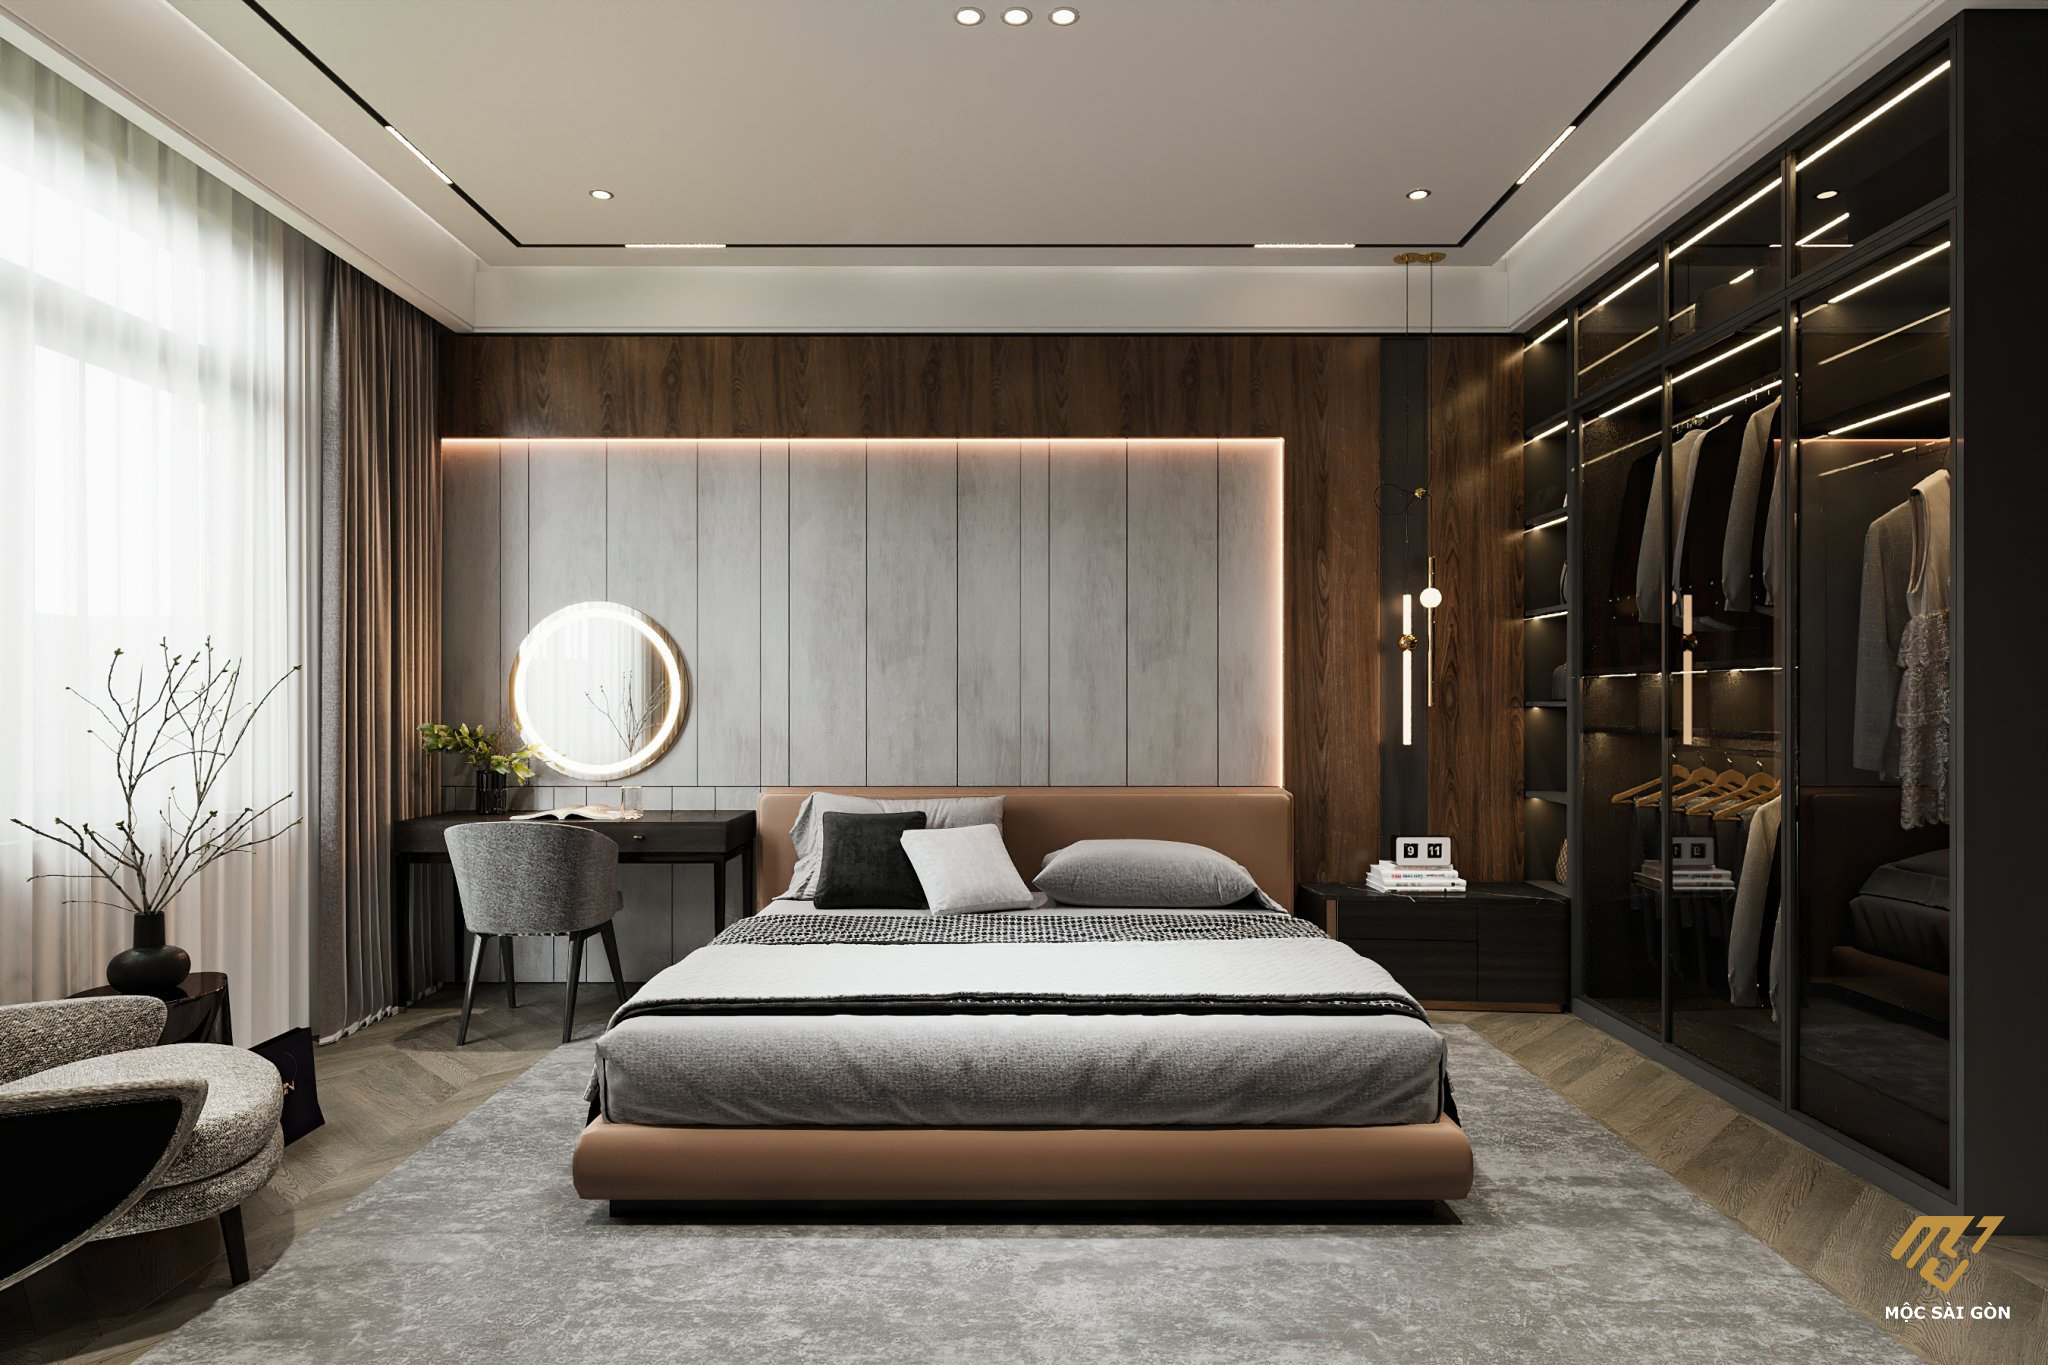 Thiết kế nội thất phòng ngủ mang đến cảm giác ấm cúng và sang trọng